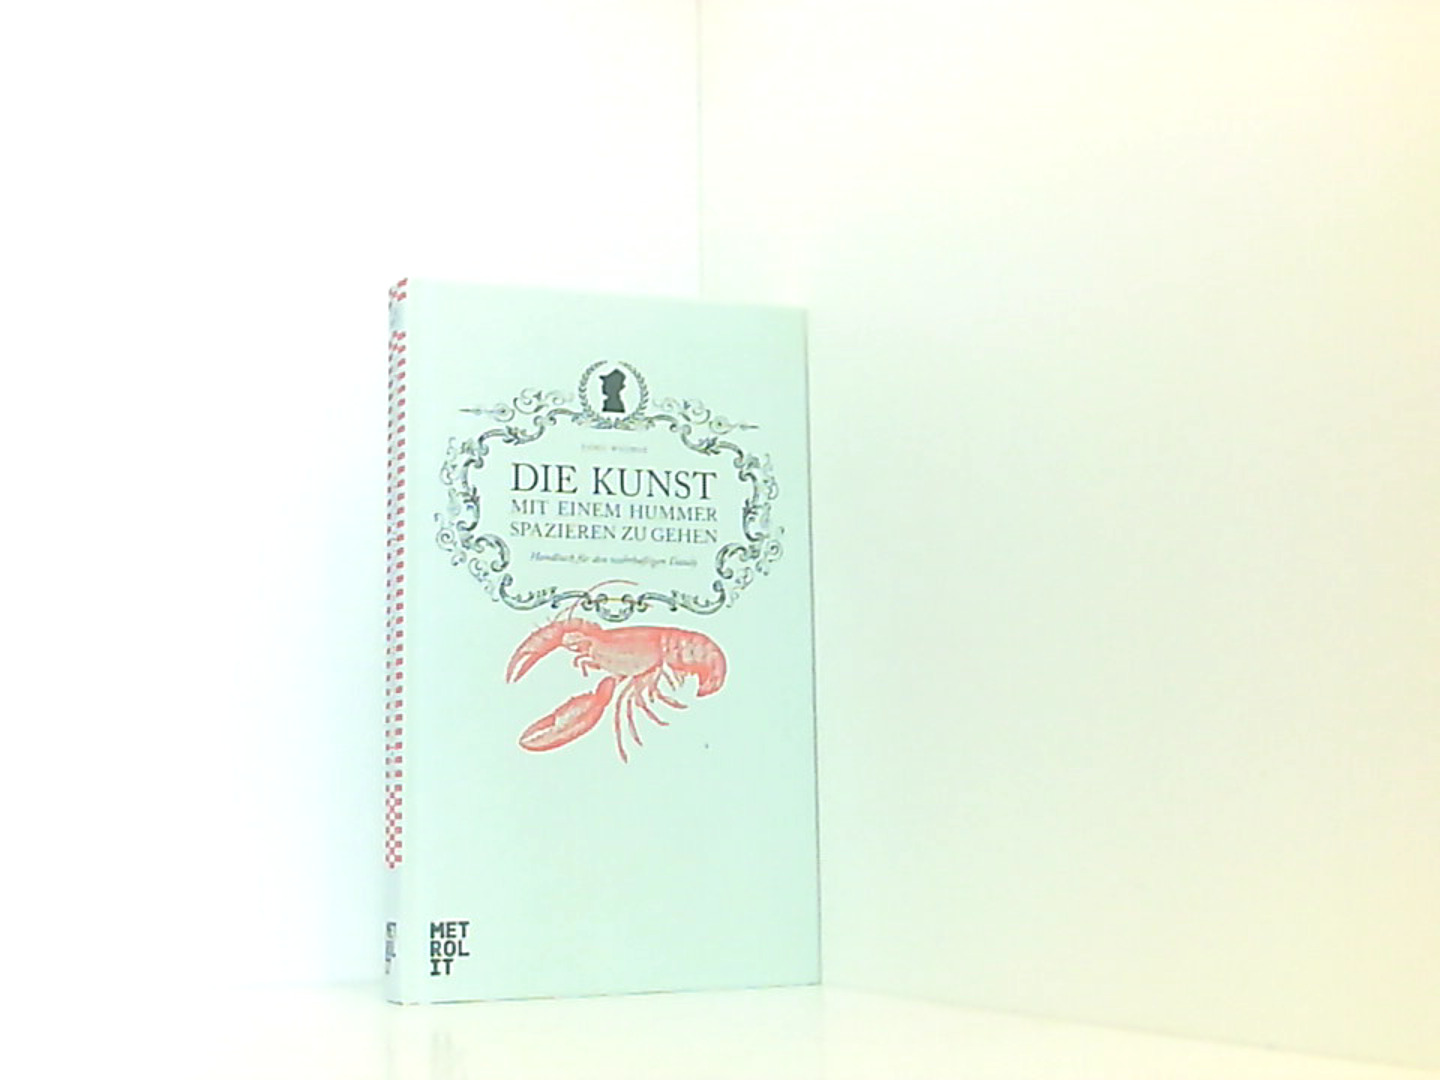 Die Kunst mit einem Hummer spazieren zu gehen: Handbuch für den wahrhaftigen Dandy - Whimsy Breaulove, Swells und Katharina von Savigny